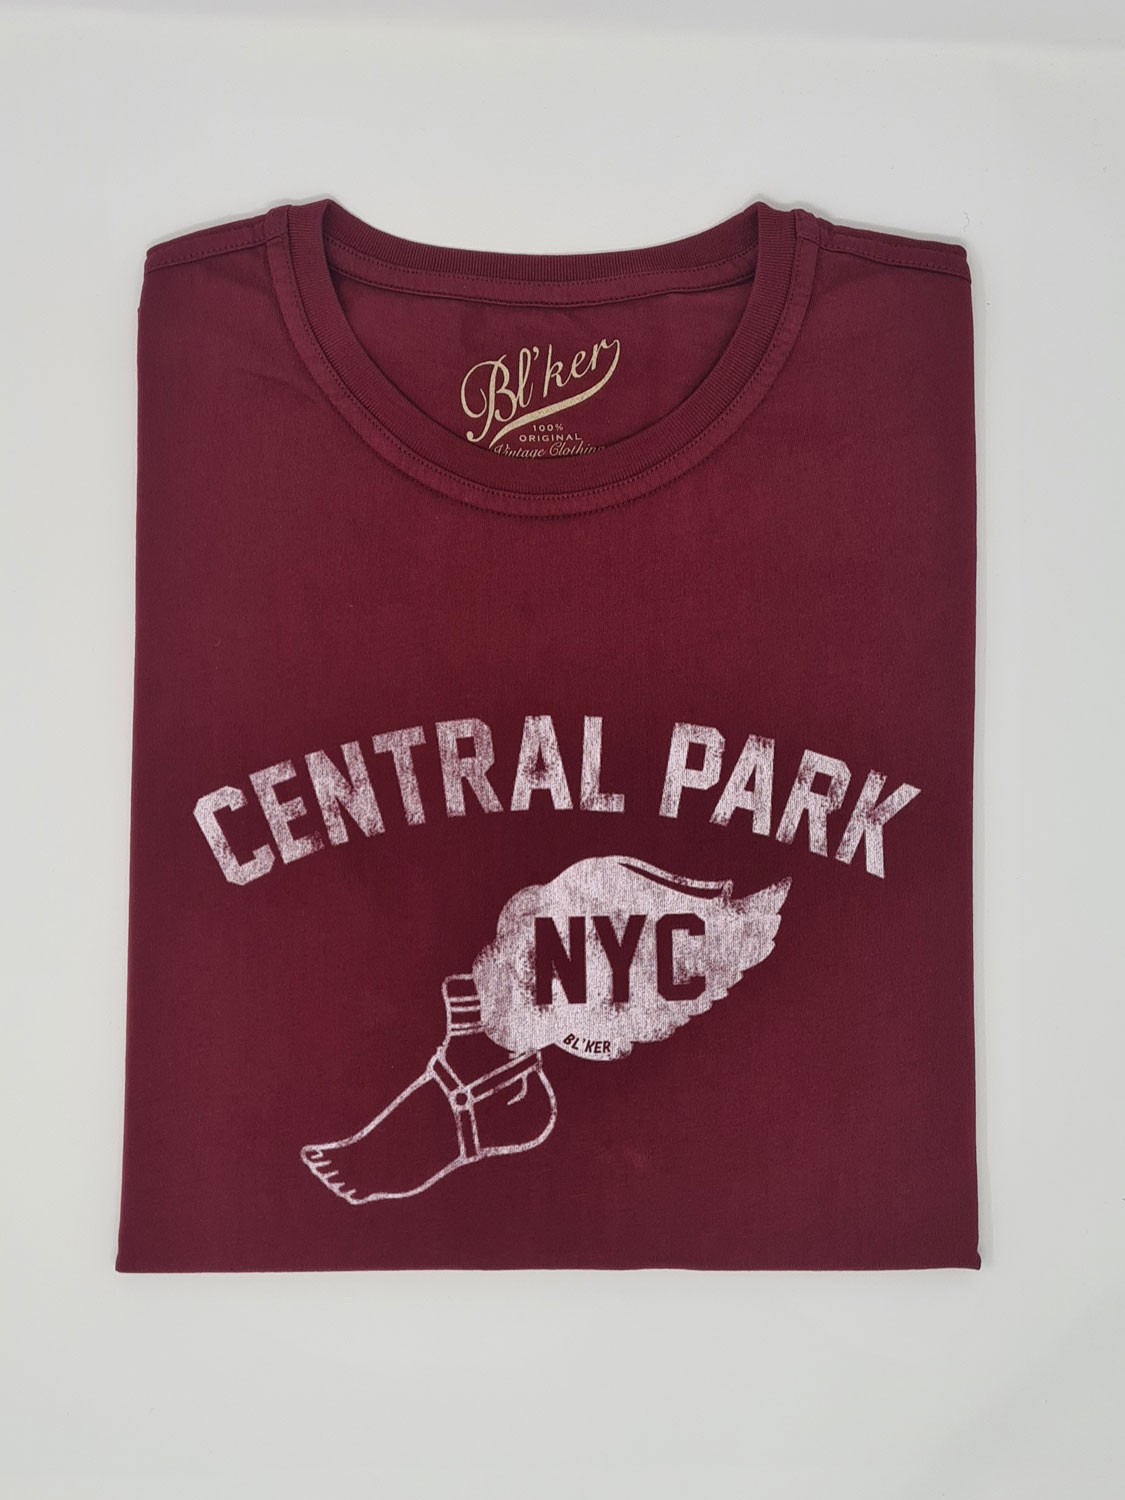 Bl'ker Men's T-shirt Graphic Central Park